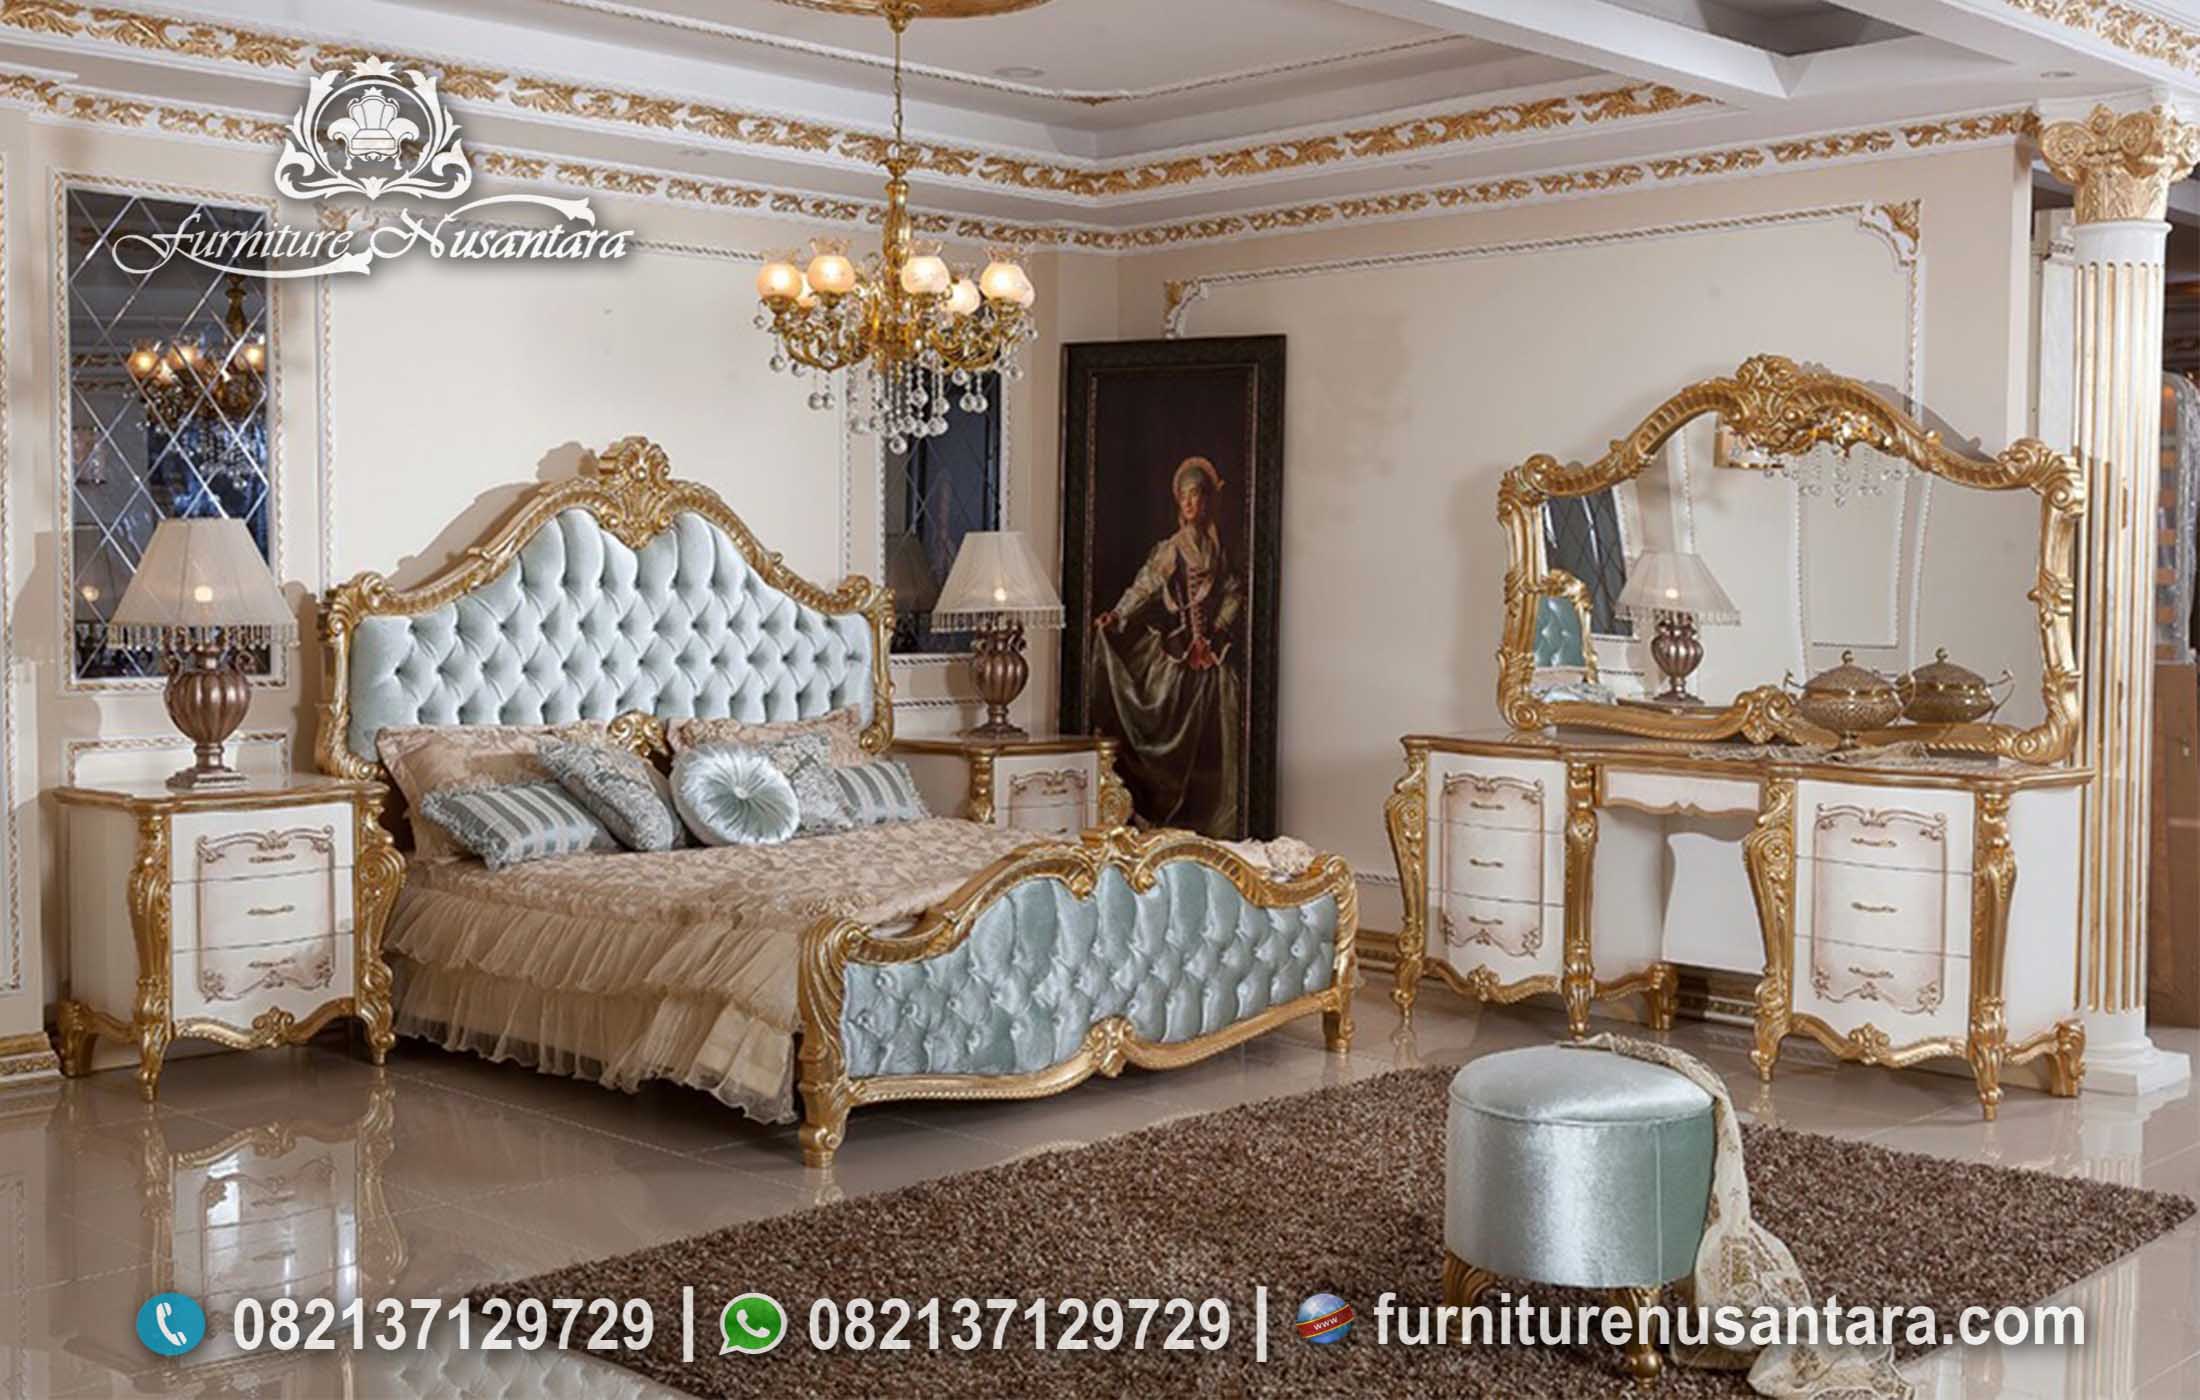 Desain Set Tempat Tidur Ukir Princes Mewah KS-171, Furniture Nusantara